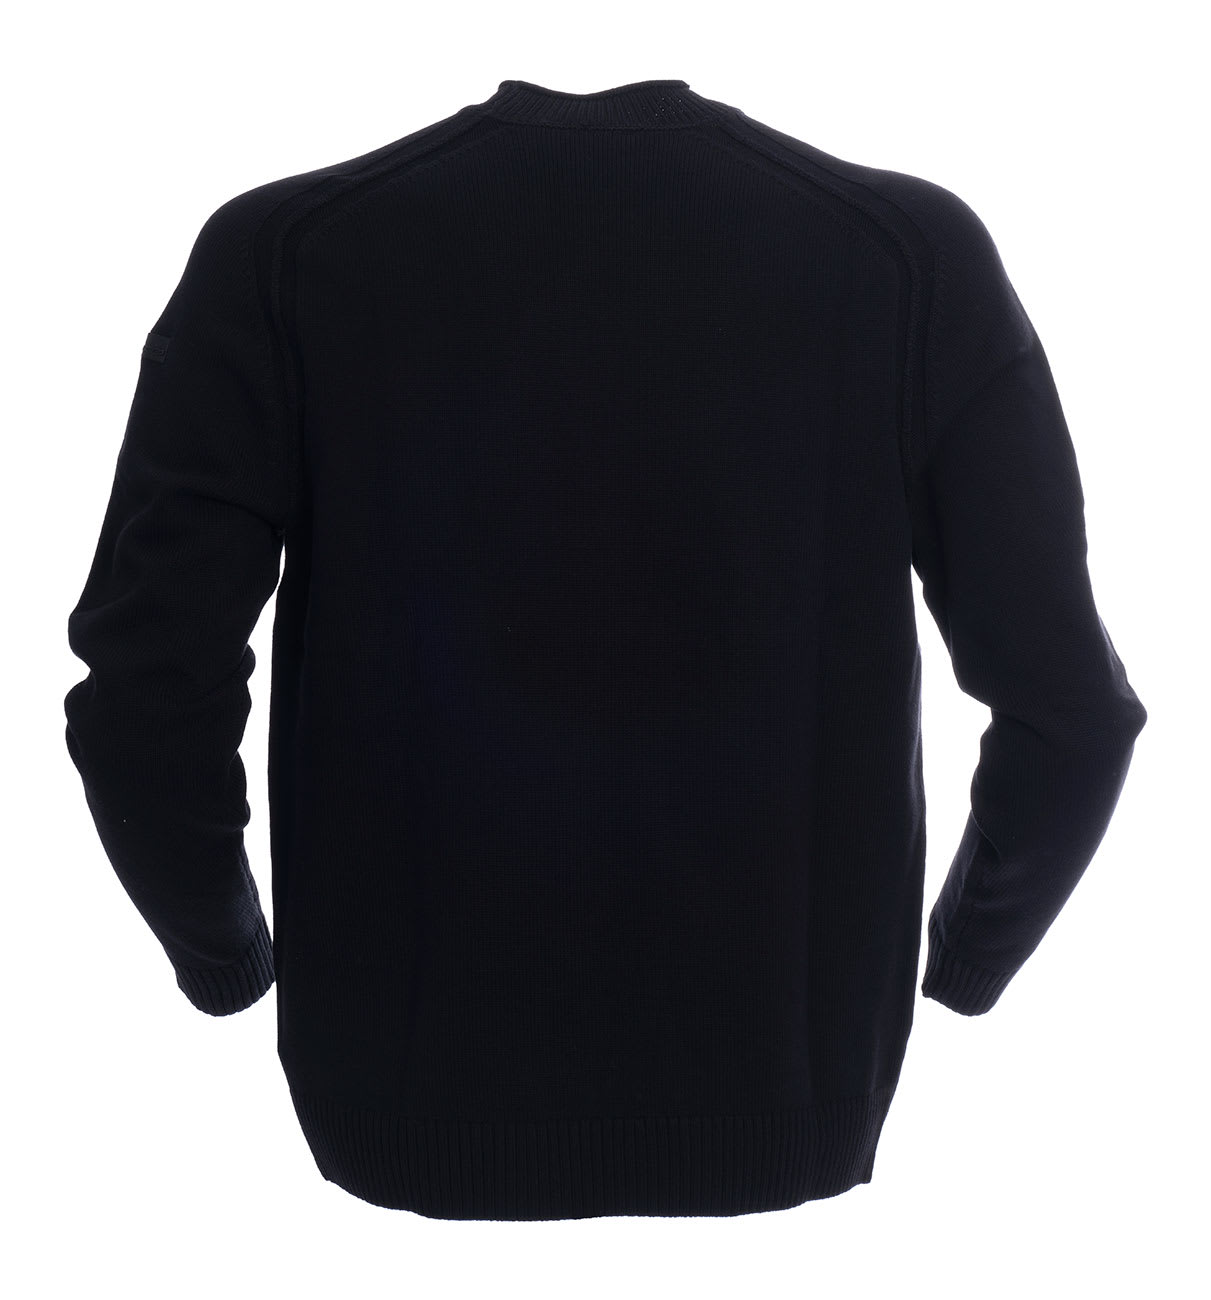 Shop Rrd - Roberto Ricci Design Cotton Sweater